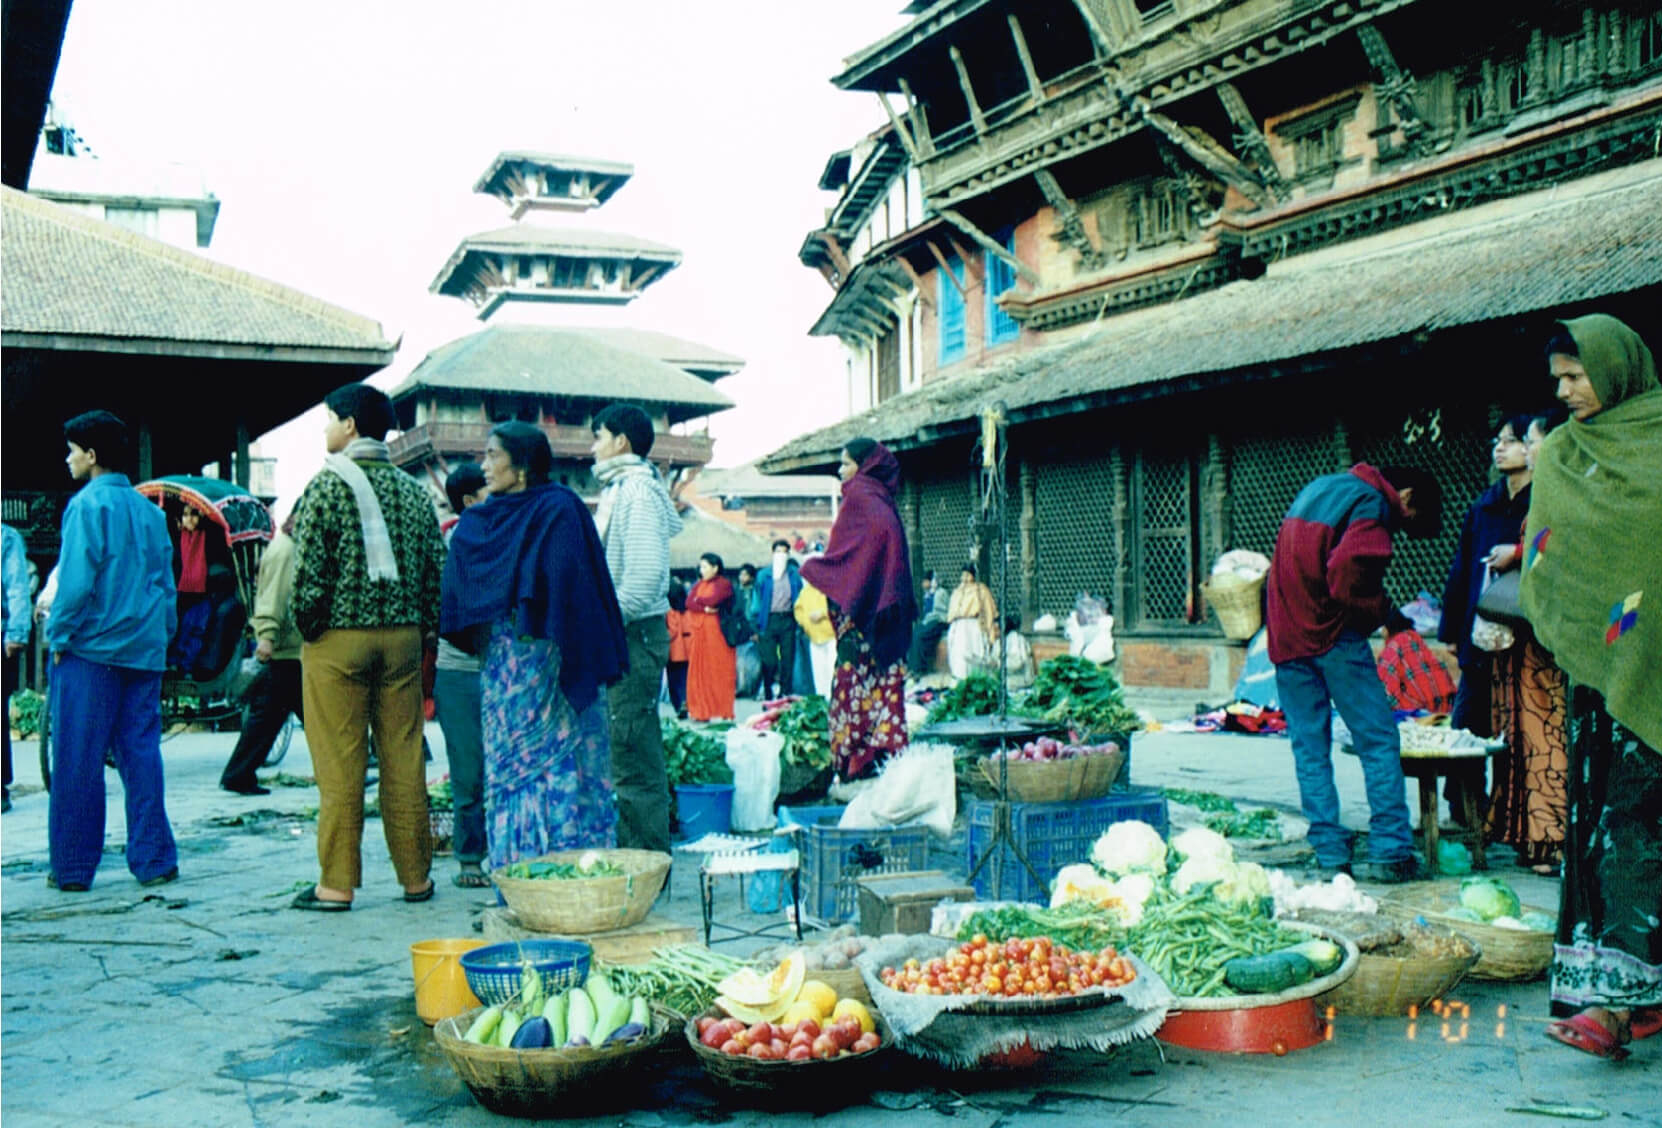 ダルバール広場で野菜を売る女性